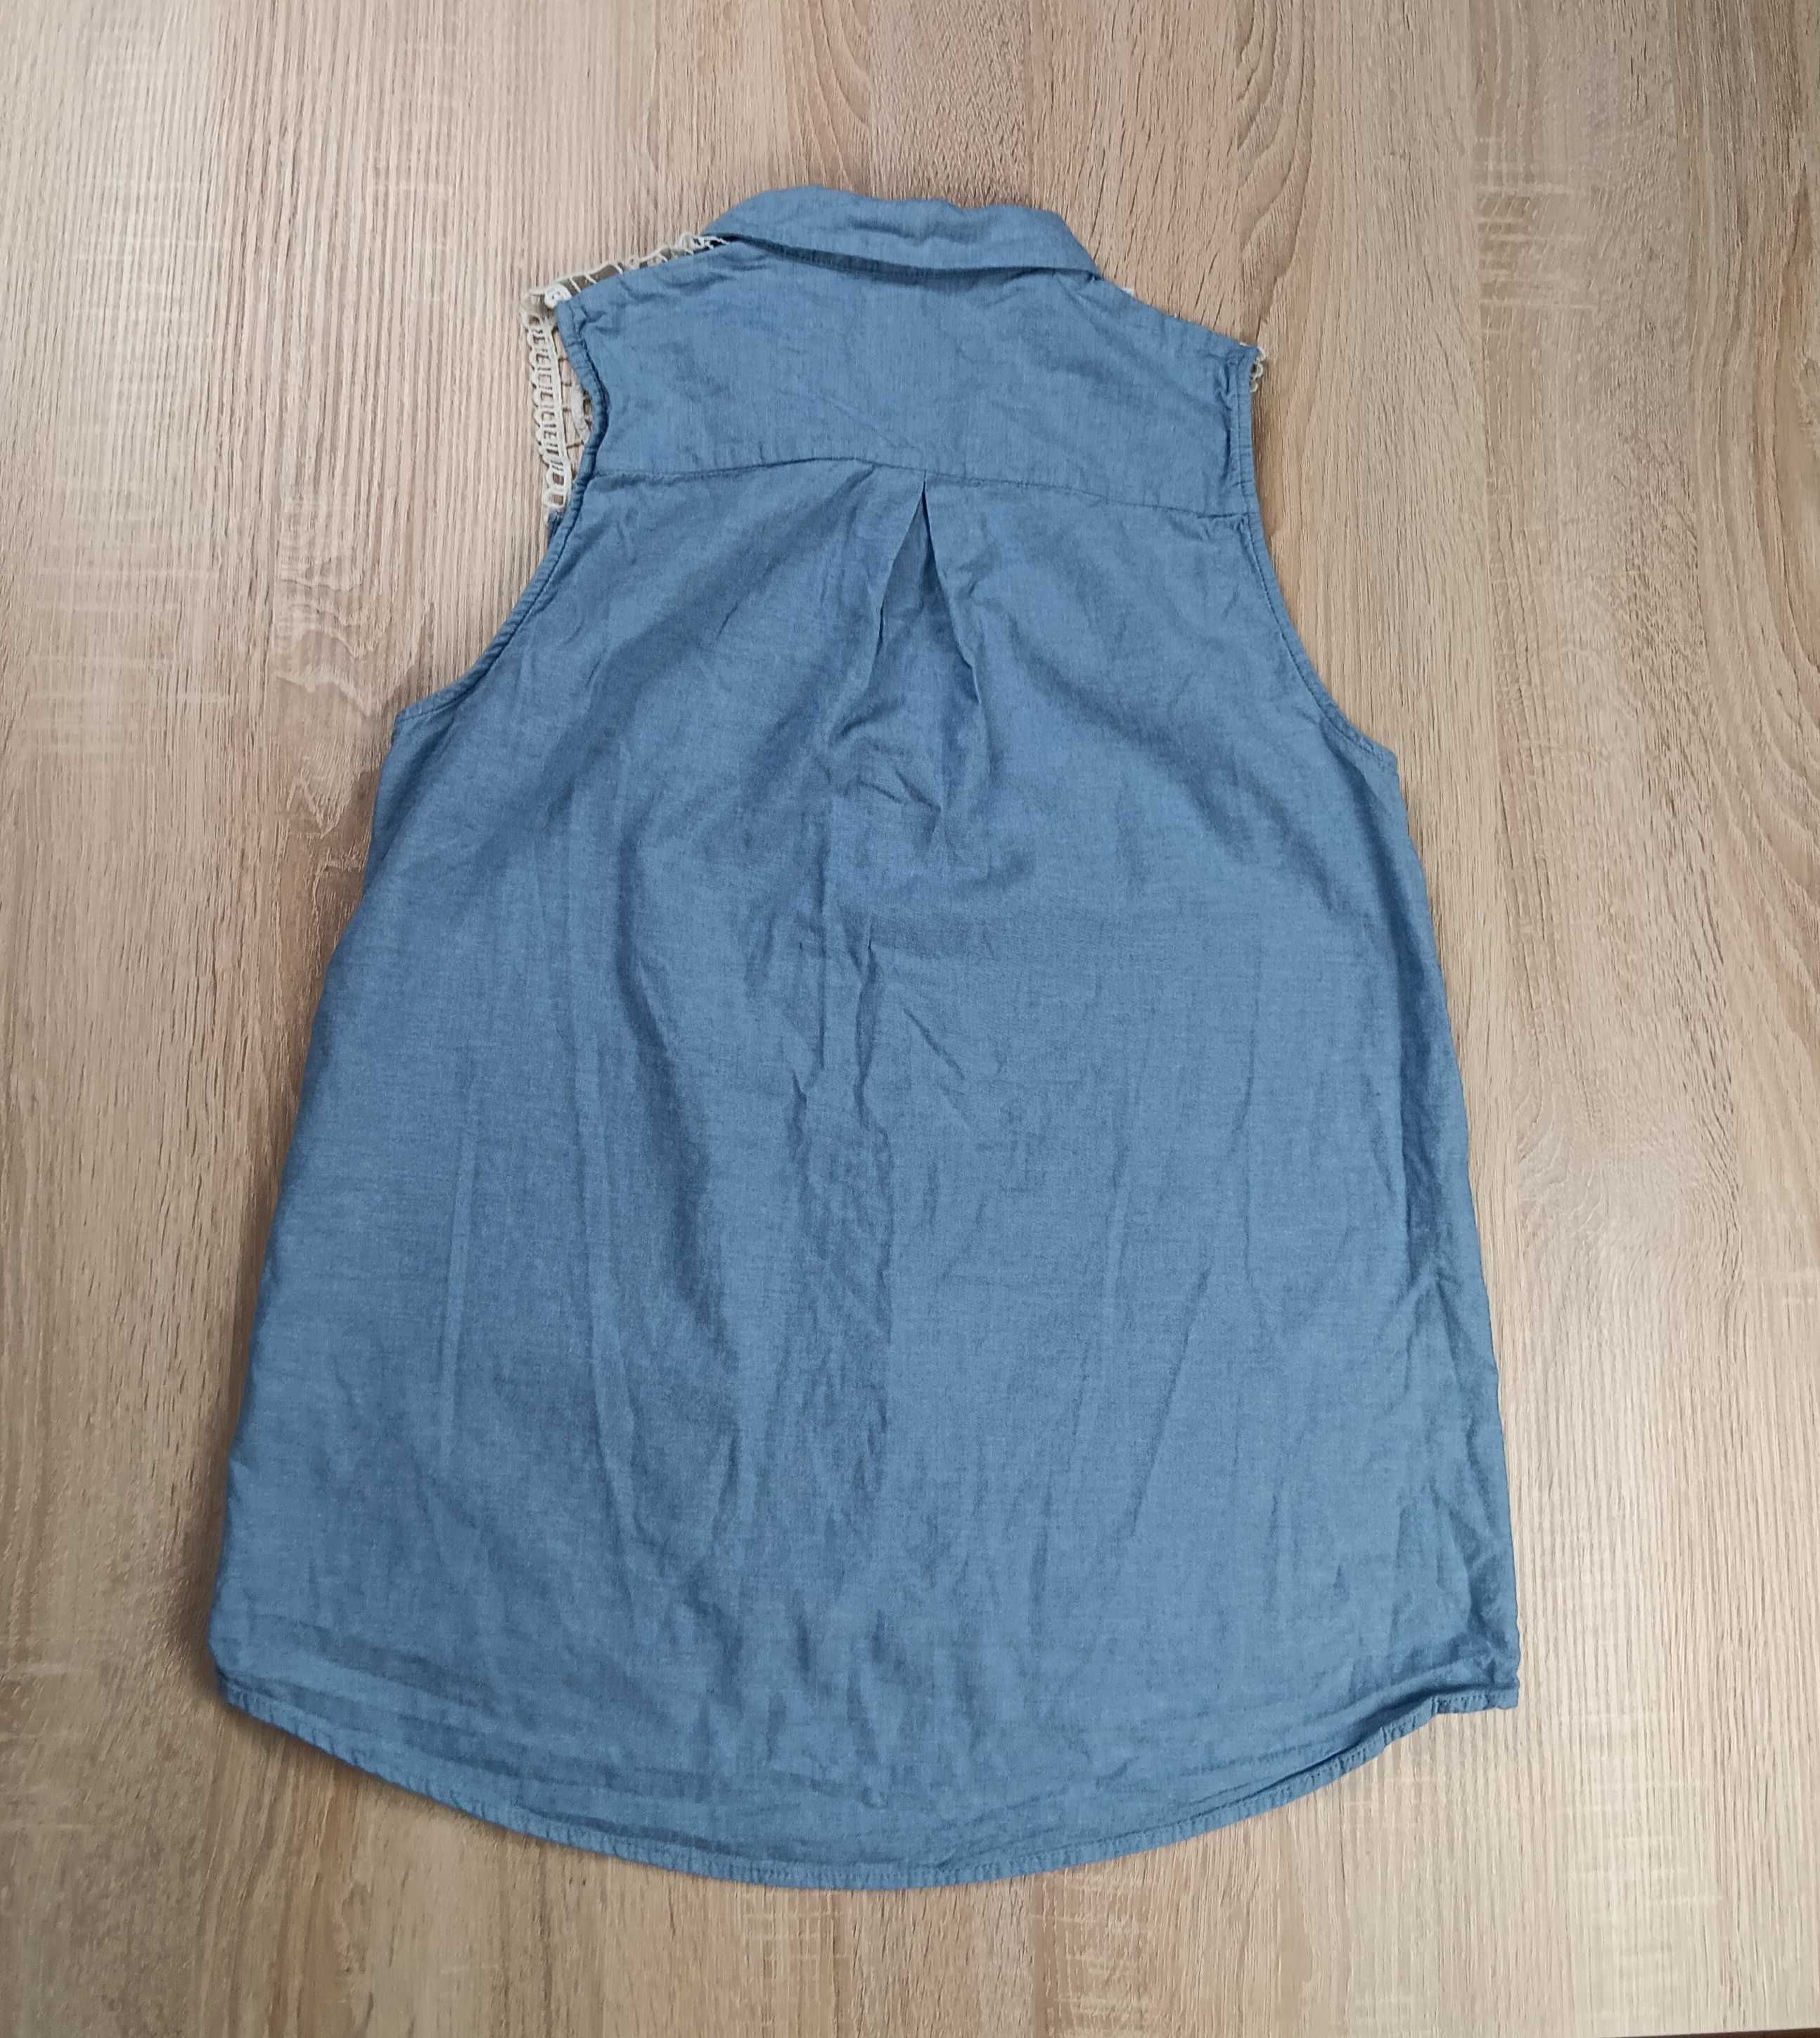 Niebieska jeansowa koszula damska bez rękawów Divided H&M rozmiar 40